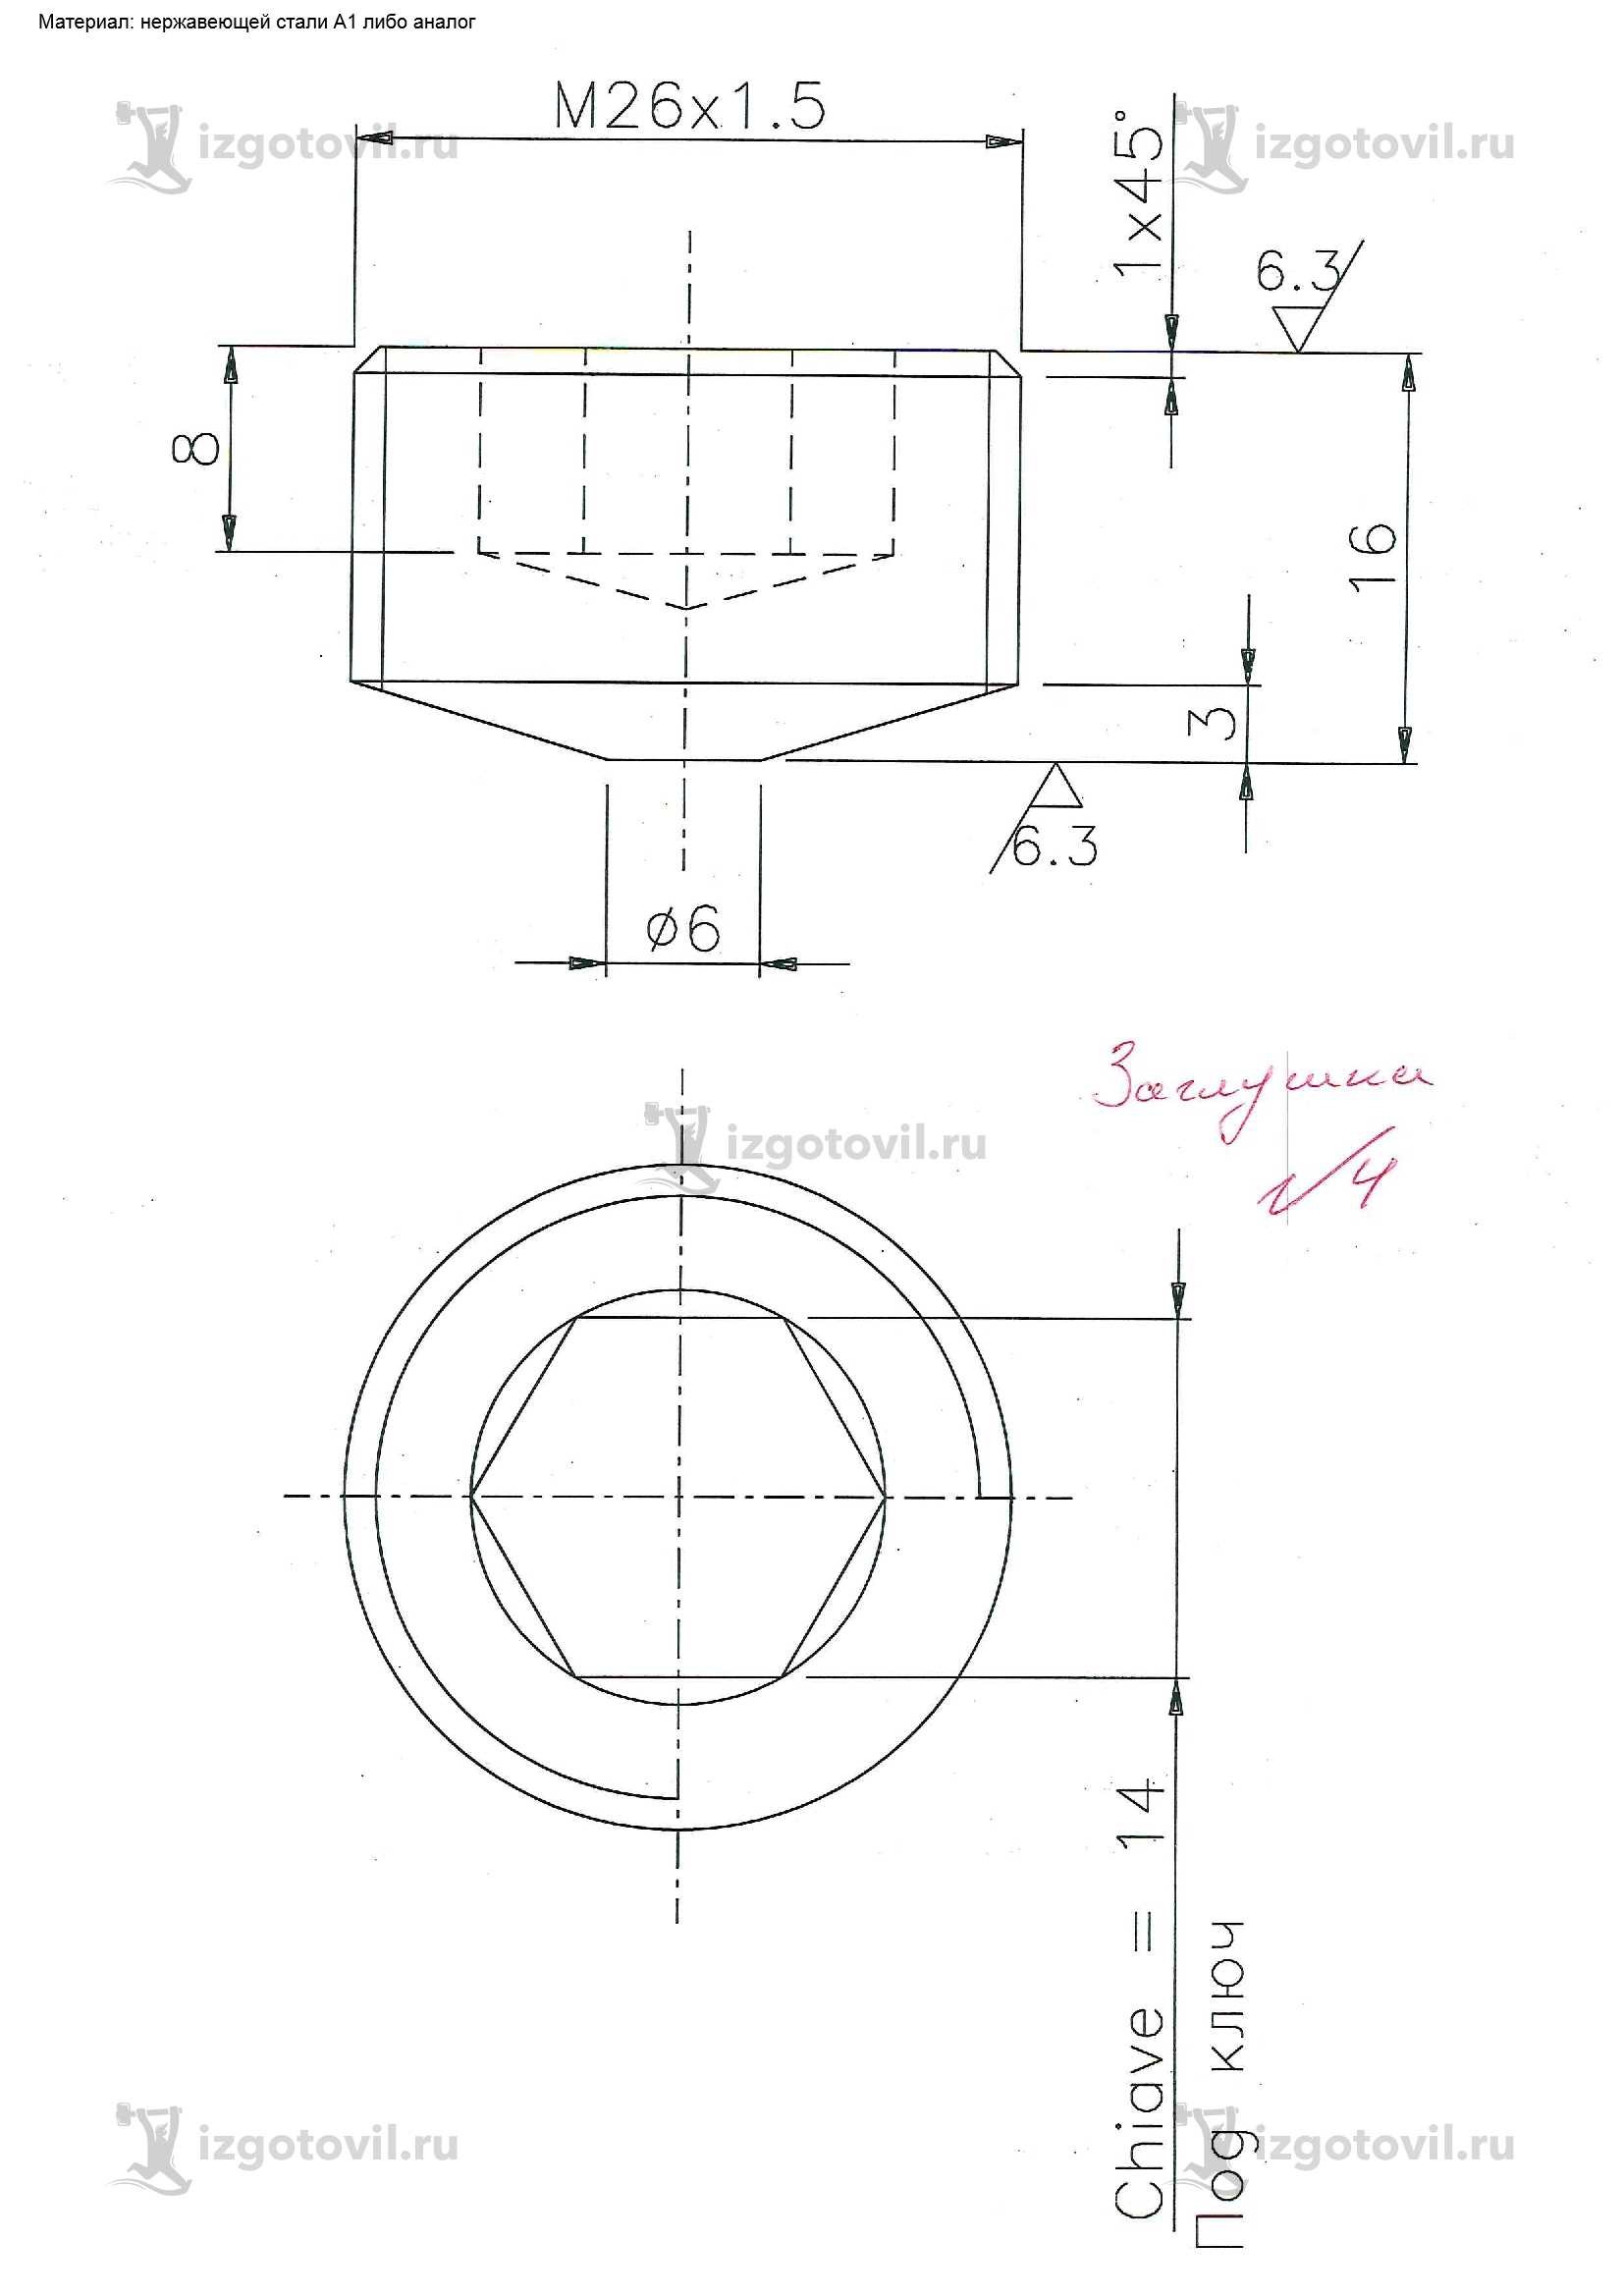 Токарная обработка деталей: изготовление заглушек и колец